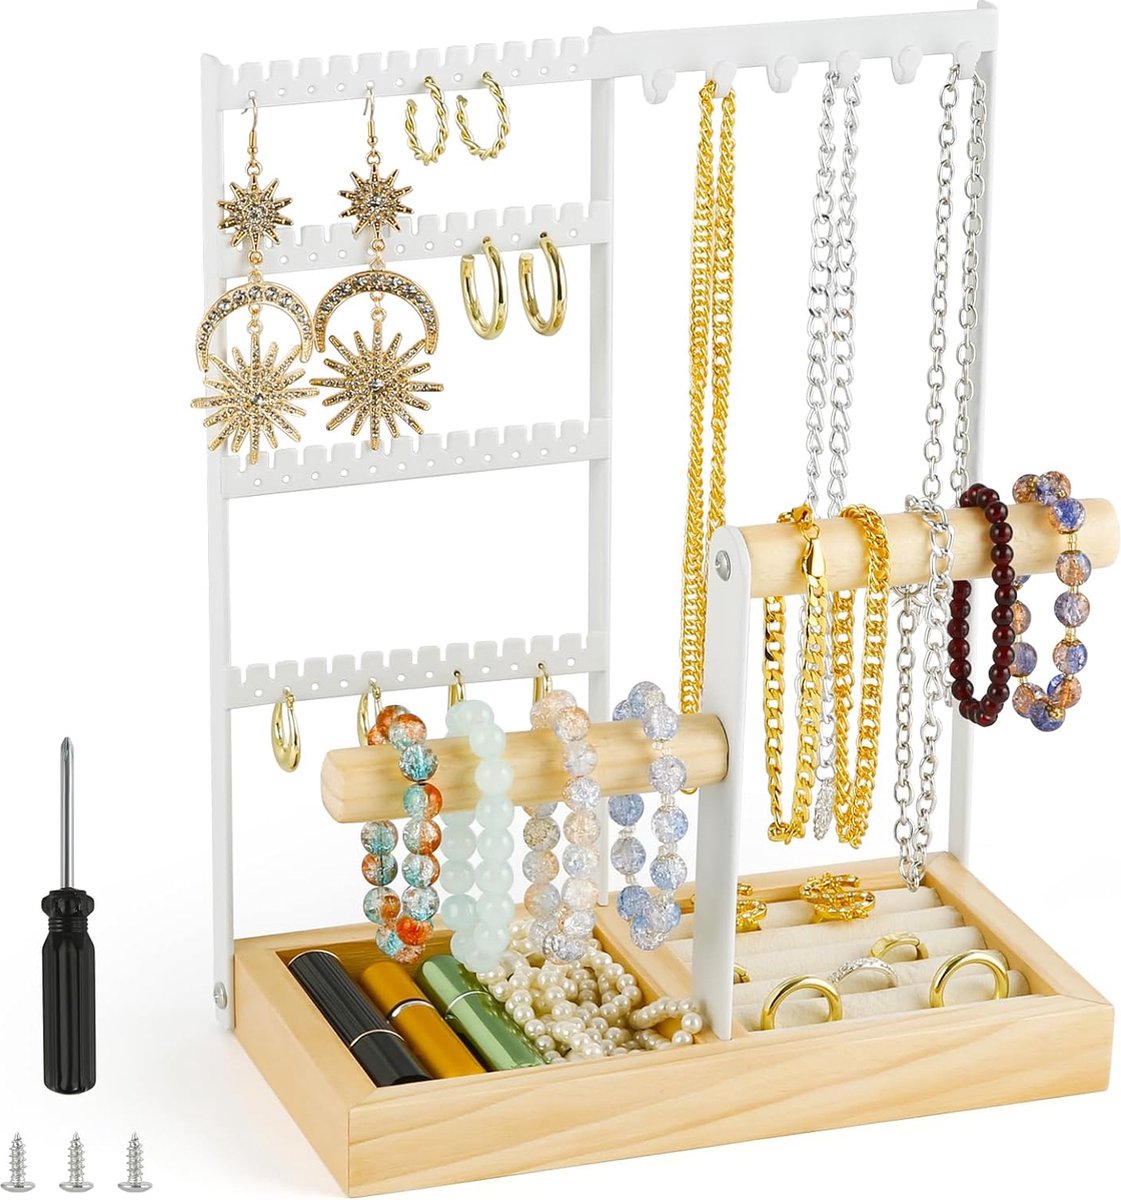 Juwelenstandaard, kettingstandaard, oorbellenstandaard, sieradenorganizer, juwelendoos, voor kettingen, oorbellen, ringen, horloges, armbanden (wit)